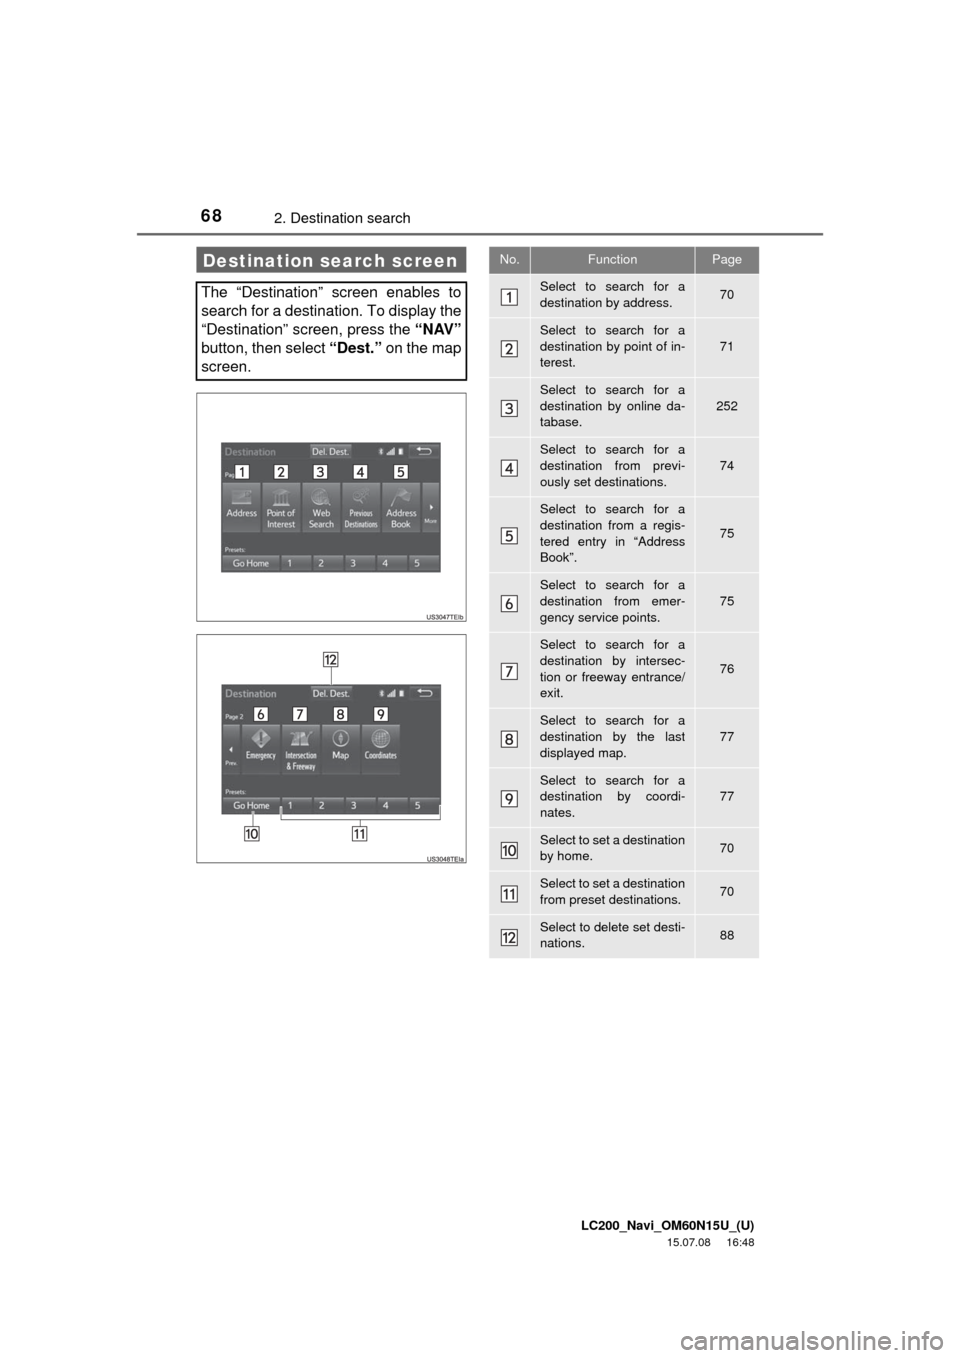 TOYOTA LAND CRUISER 2016 J200 Navigation Manual LC200_Navi_OM60N15U_(U)
15.07.08     16:48
682. Destination search
Destination search screen
The “Destination” screen enables to
search for a destination. To display the
“Destination” screen, 